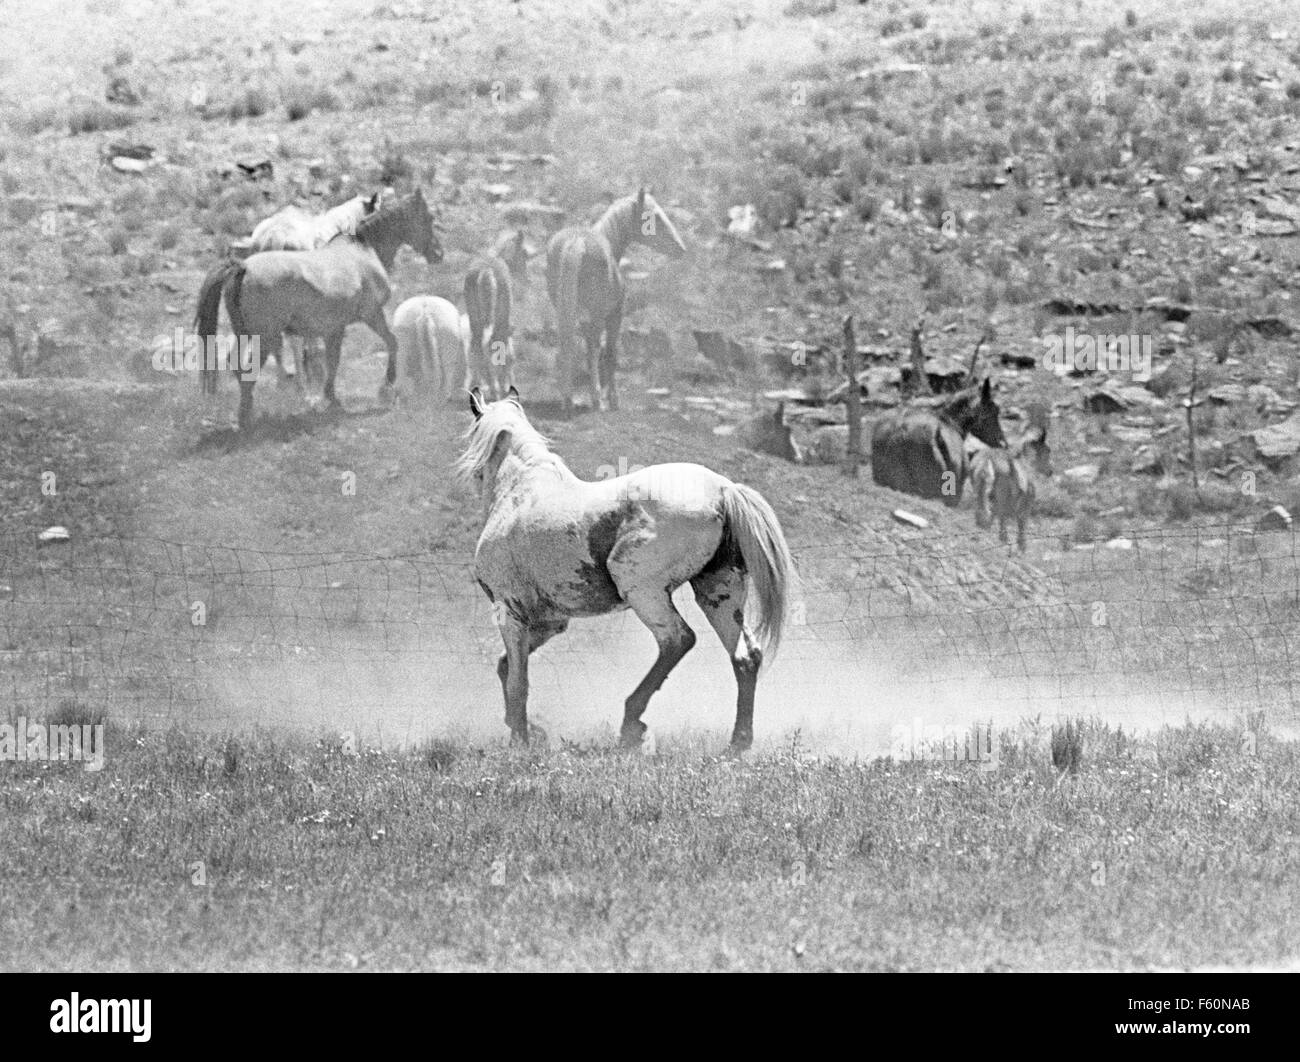 Un étalon de Medicine Hat, le chef d'un troupeau de chevaux sauvages Mustang barbe espagnol au Nouveau Mexique Banque D'Images